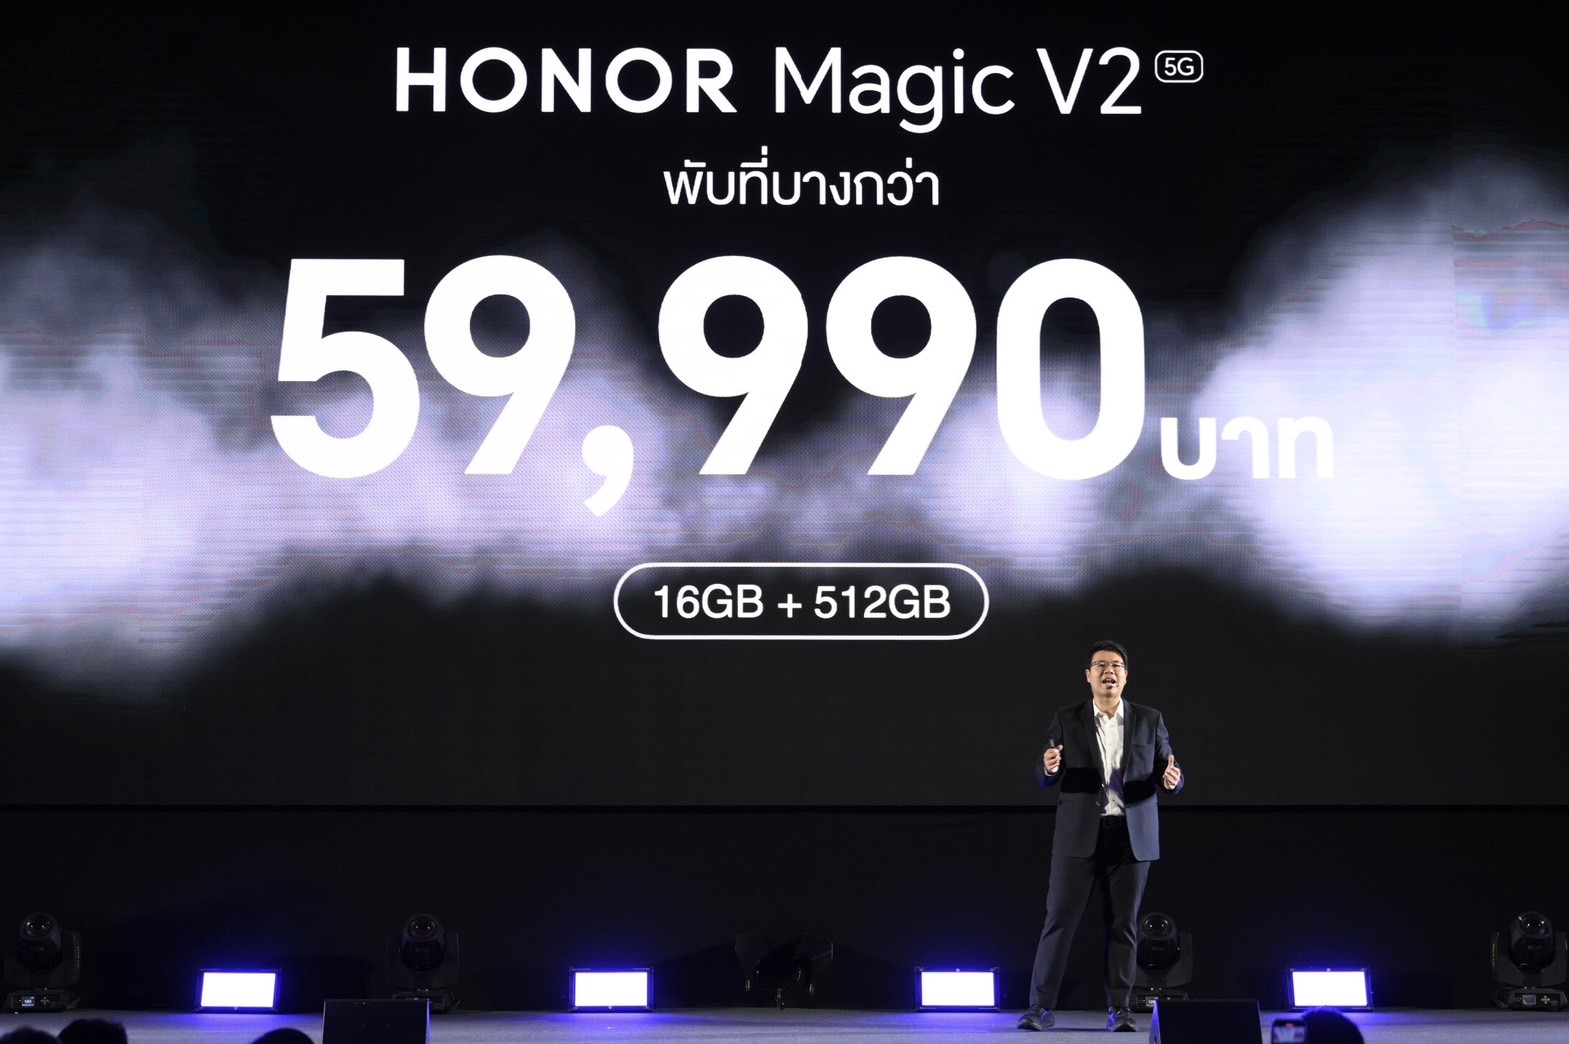 HONOR เปิดตัว 'HONOR Magic V2' บางที่สุดในตลาดประเทศไทย 59,990 บาท เริ่ม Pre-Order 8-12 ก.พ.นี้